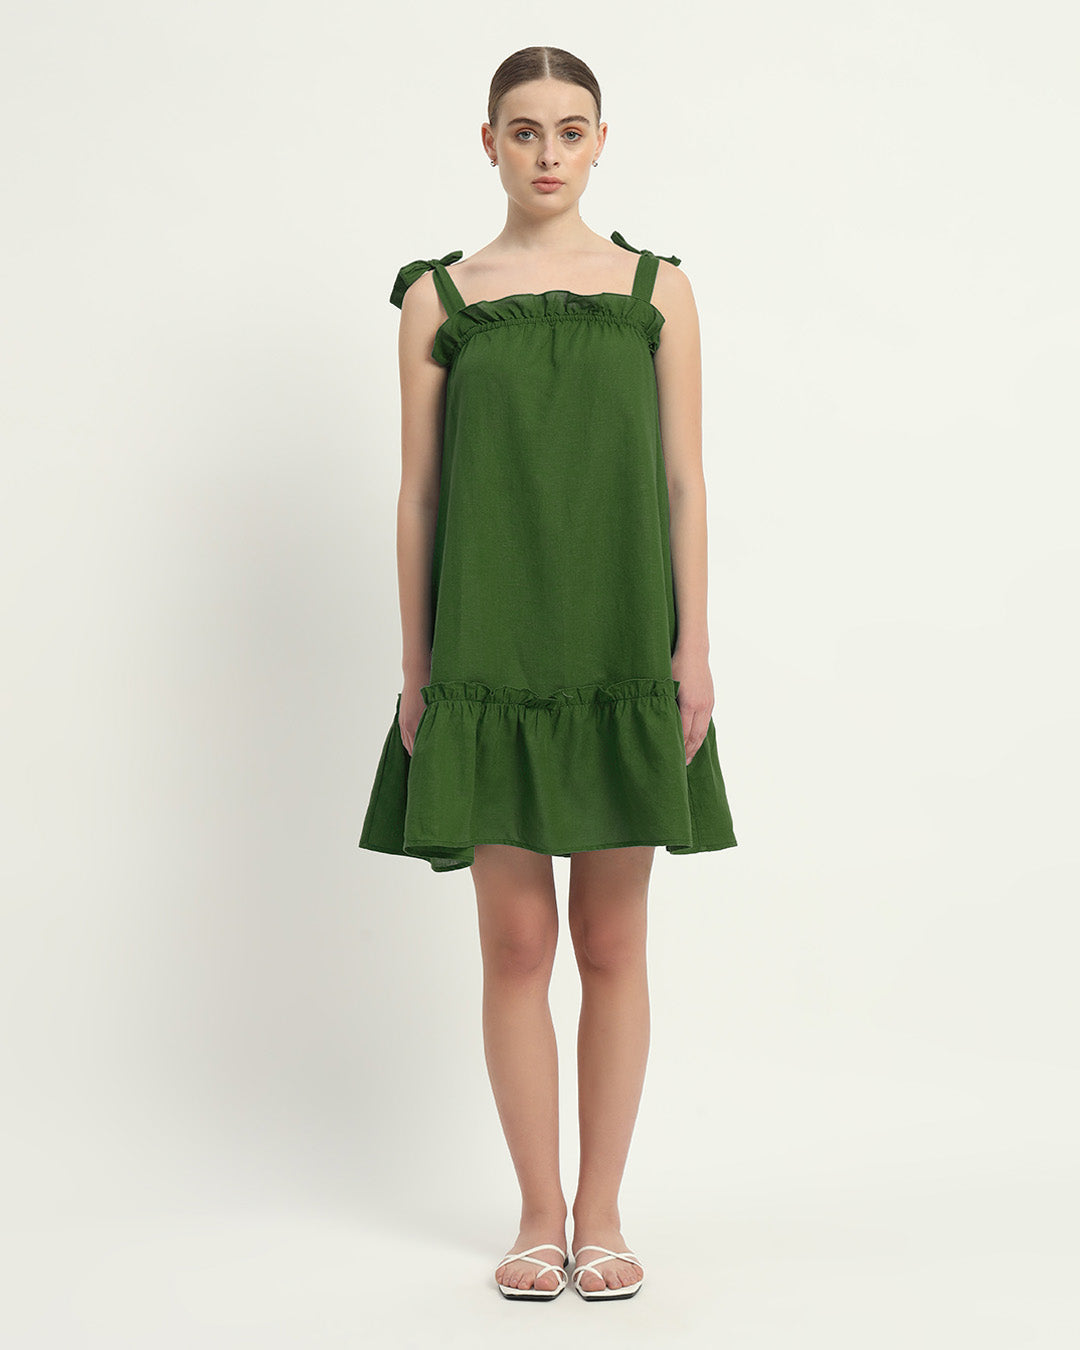 The Emerald Amalfi Cotton Dress